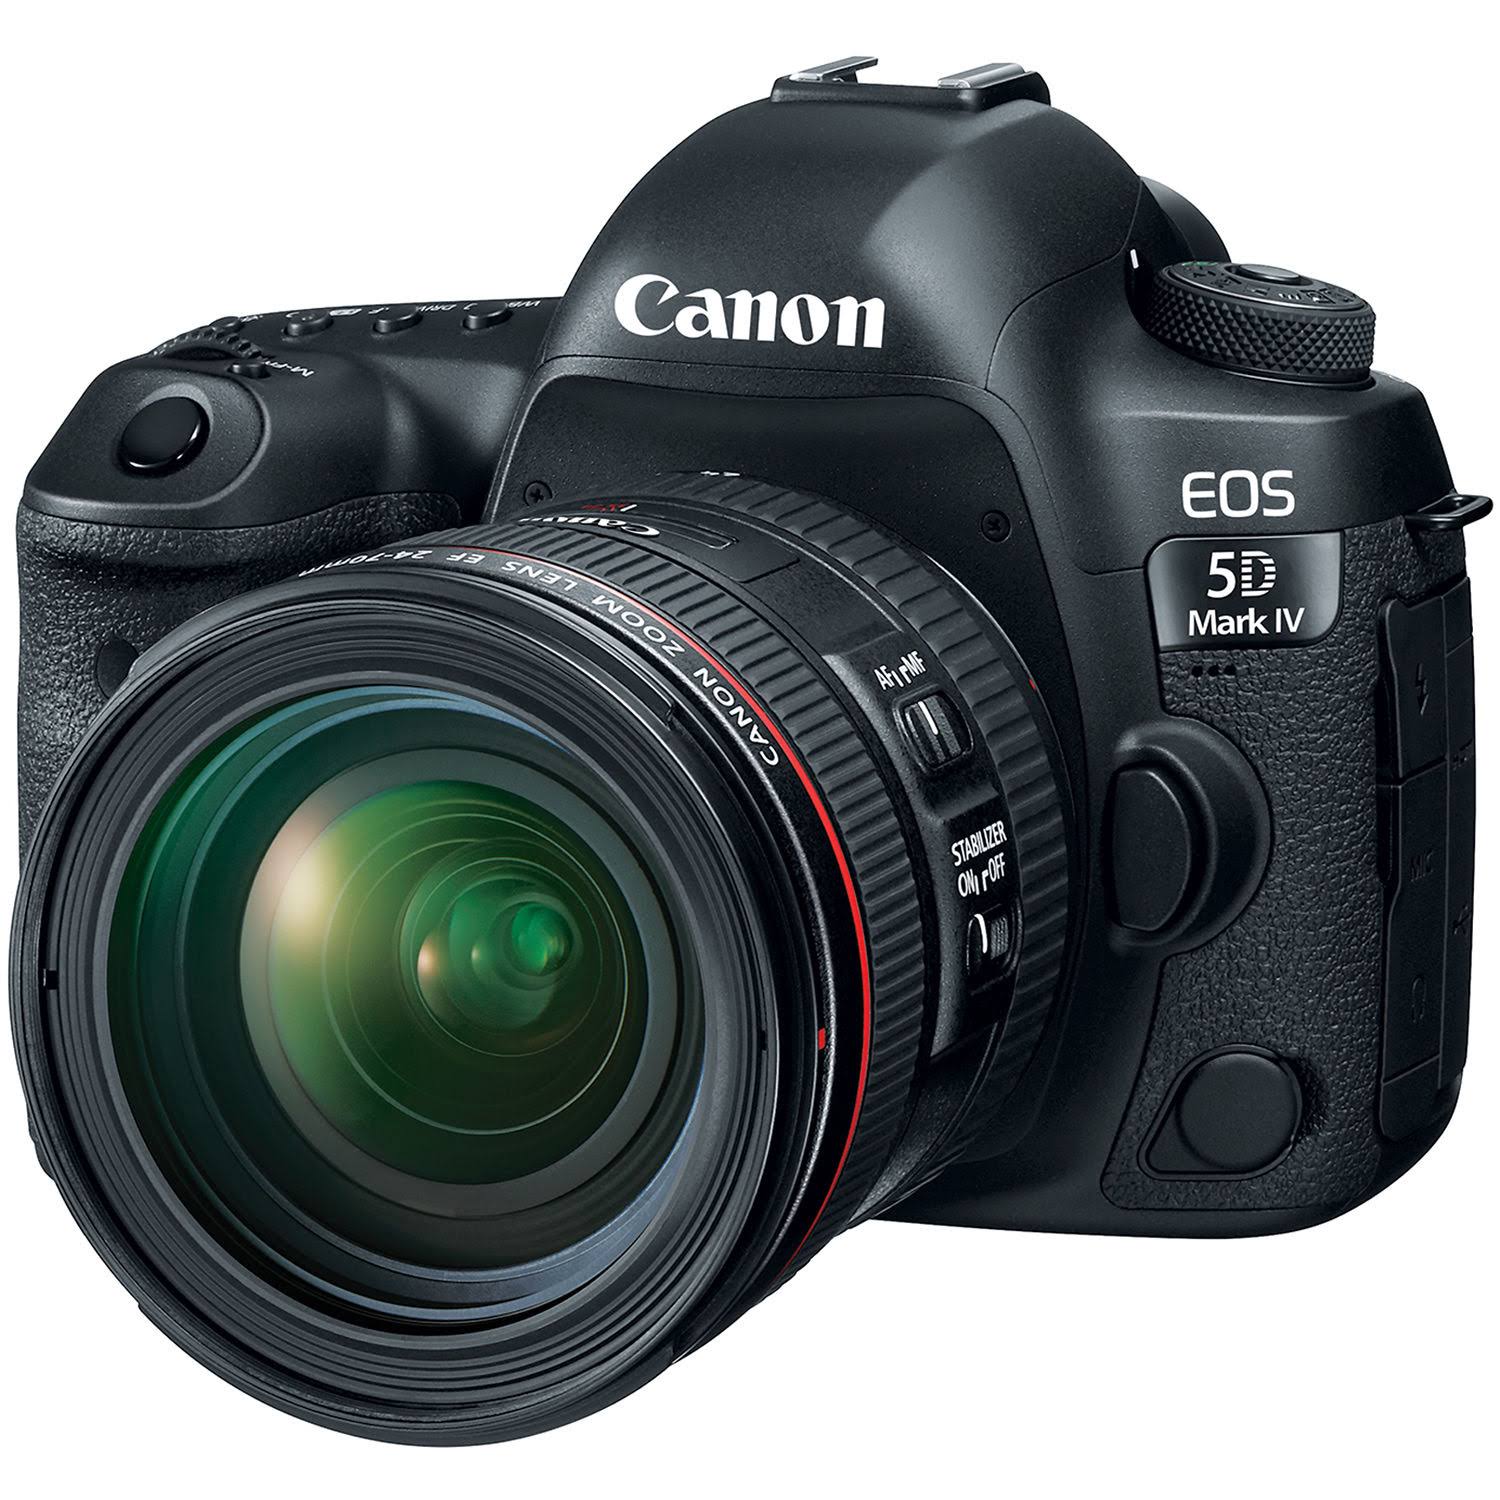 Canon كاميرا EOS 5D Mark IV ذات الإطار الكامل SLR الرقمية مع مجموعة عدسات EF 24-70mm f / 4L IS USM